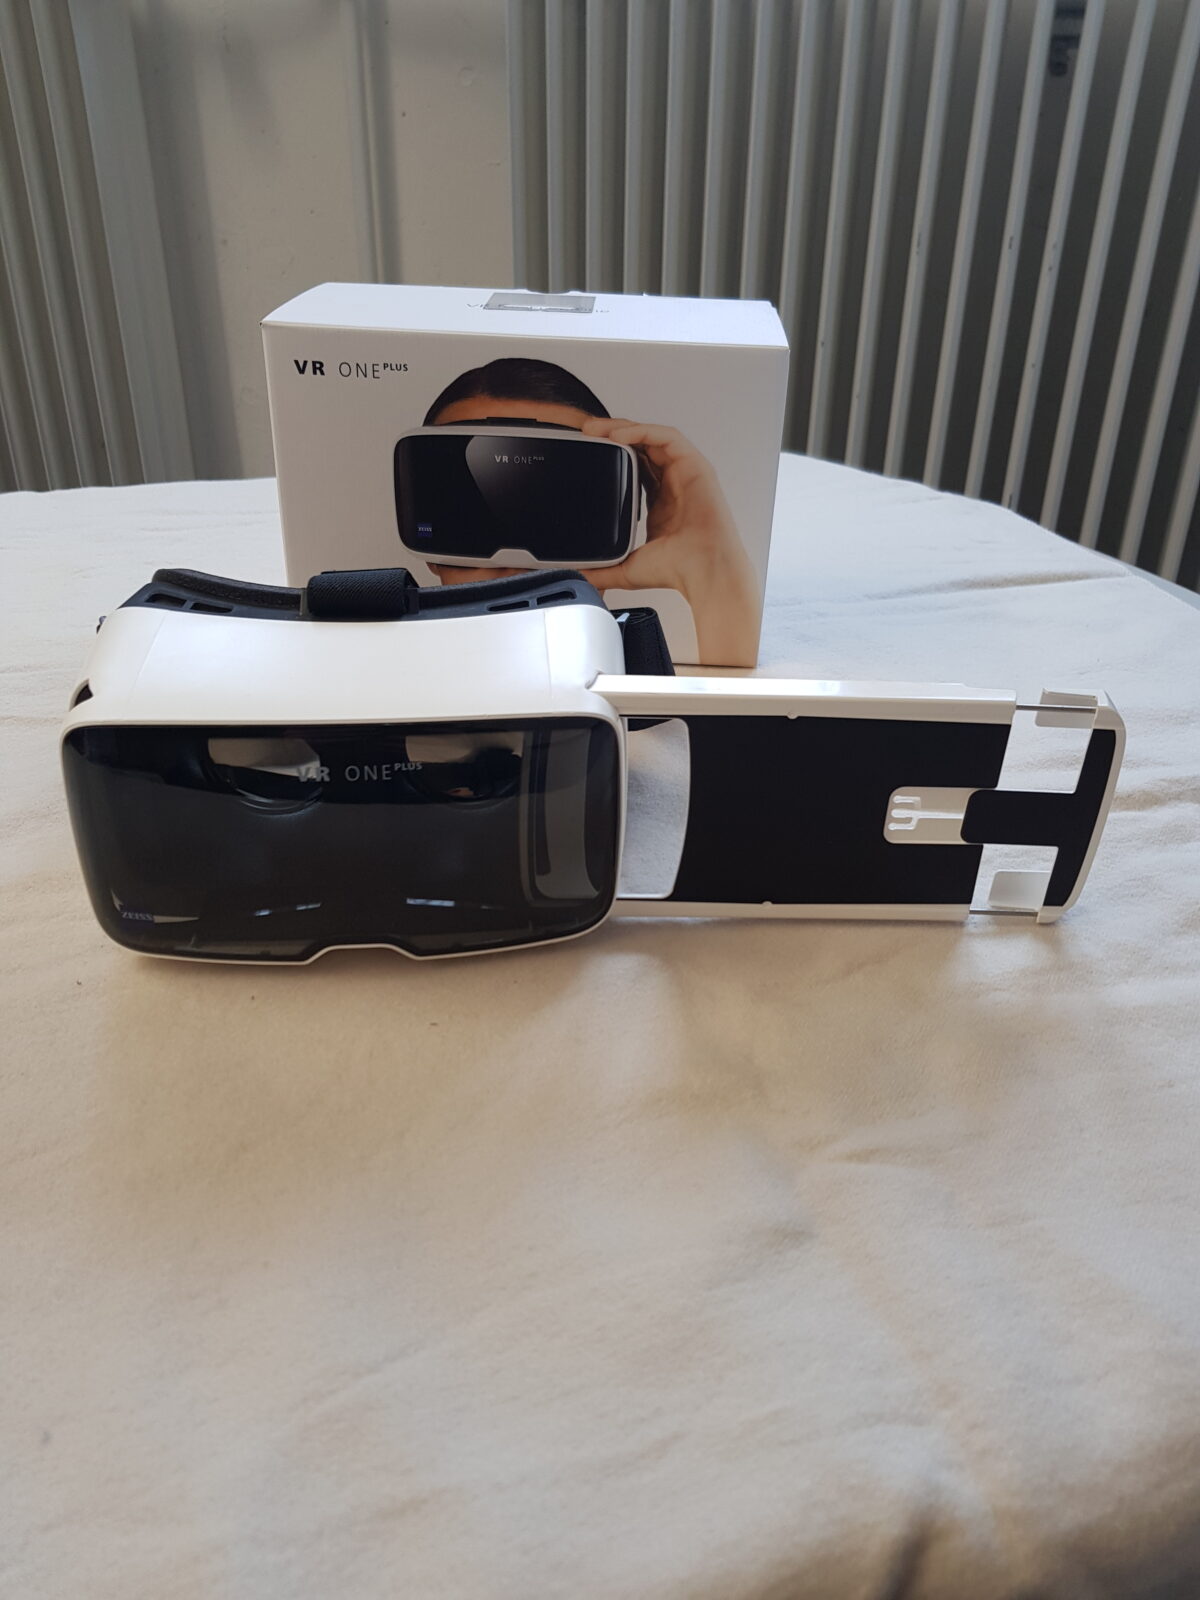 Zeiss VR One VR-Brille mit Einschub für Smartphone